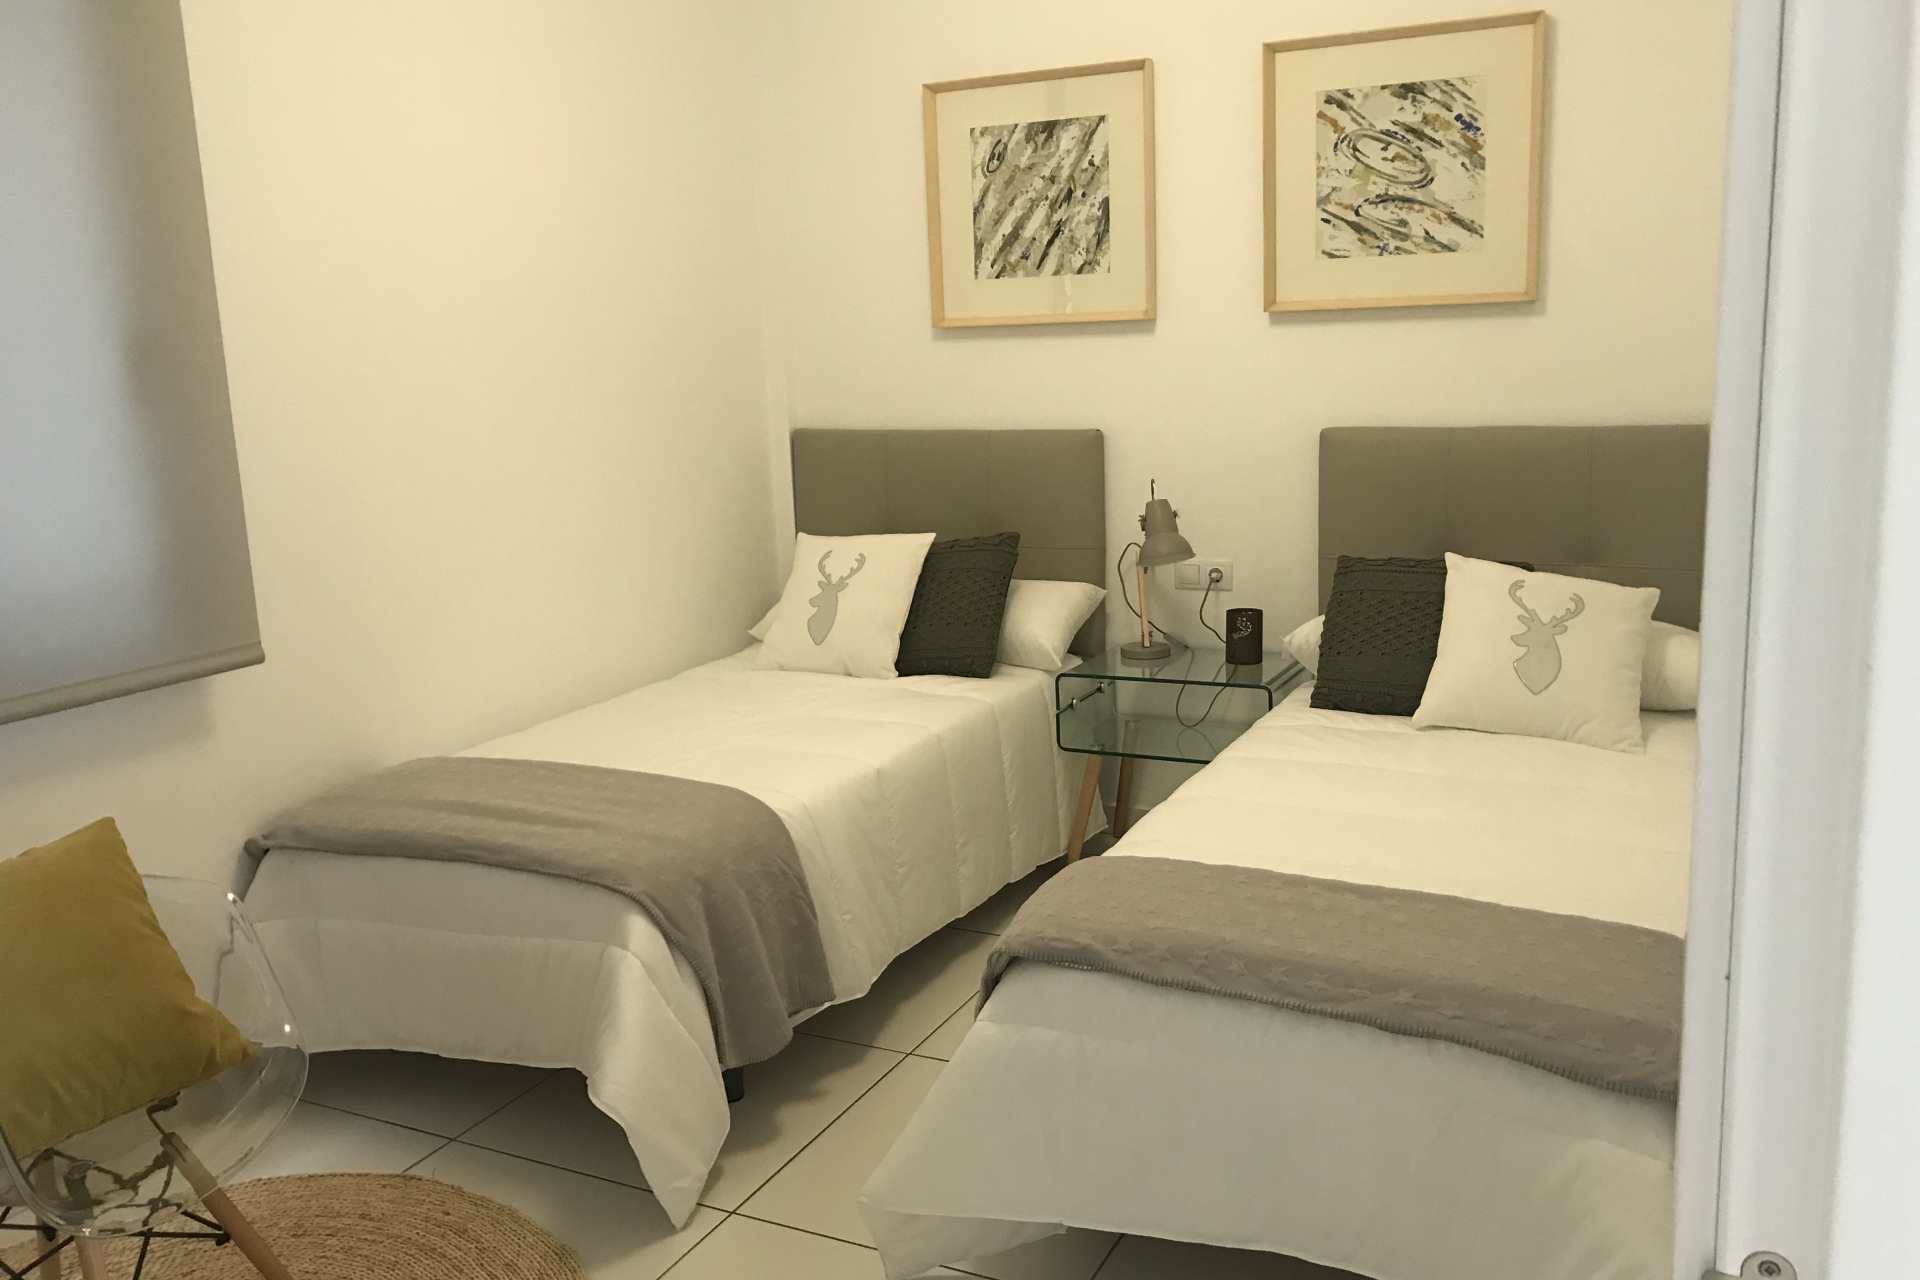 Propiedad en espera - Apartment for sale - Orihuela Costa - Villamartin